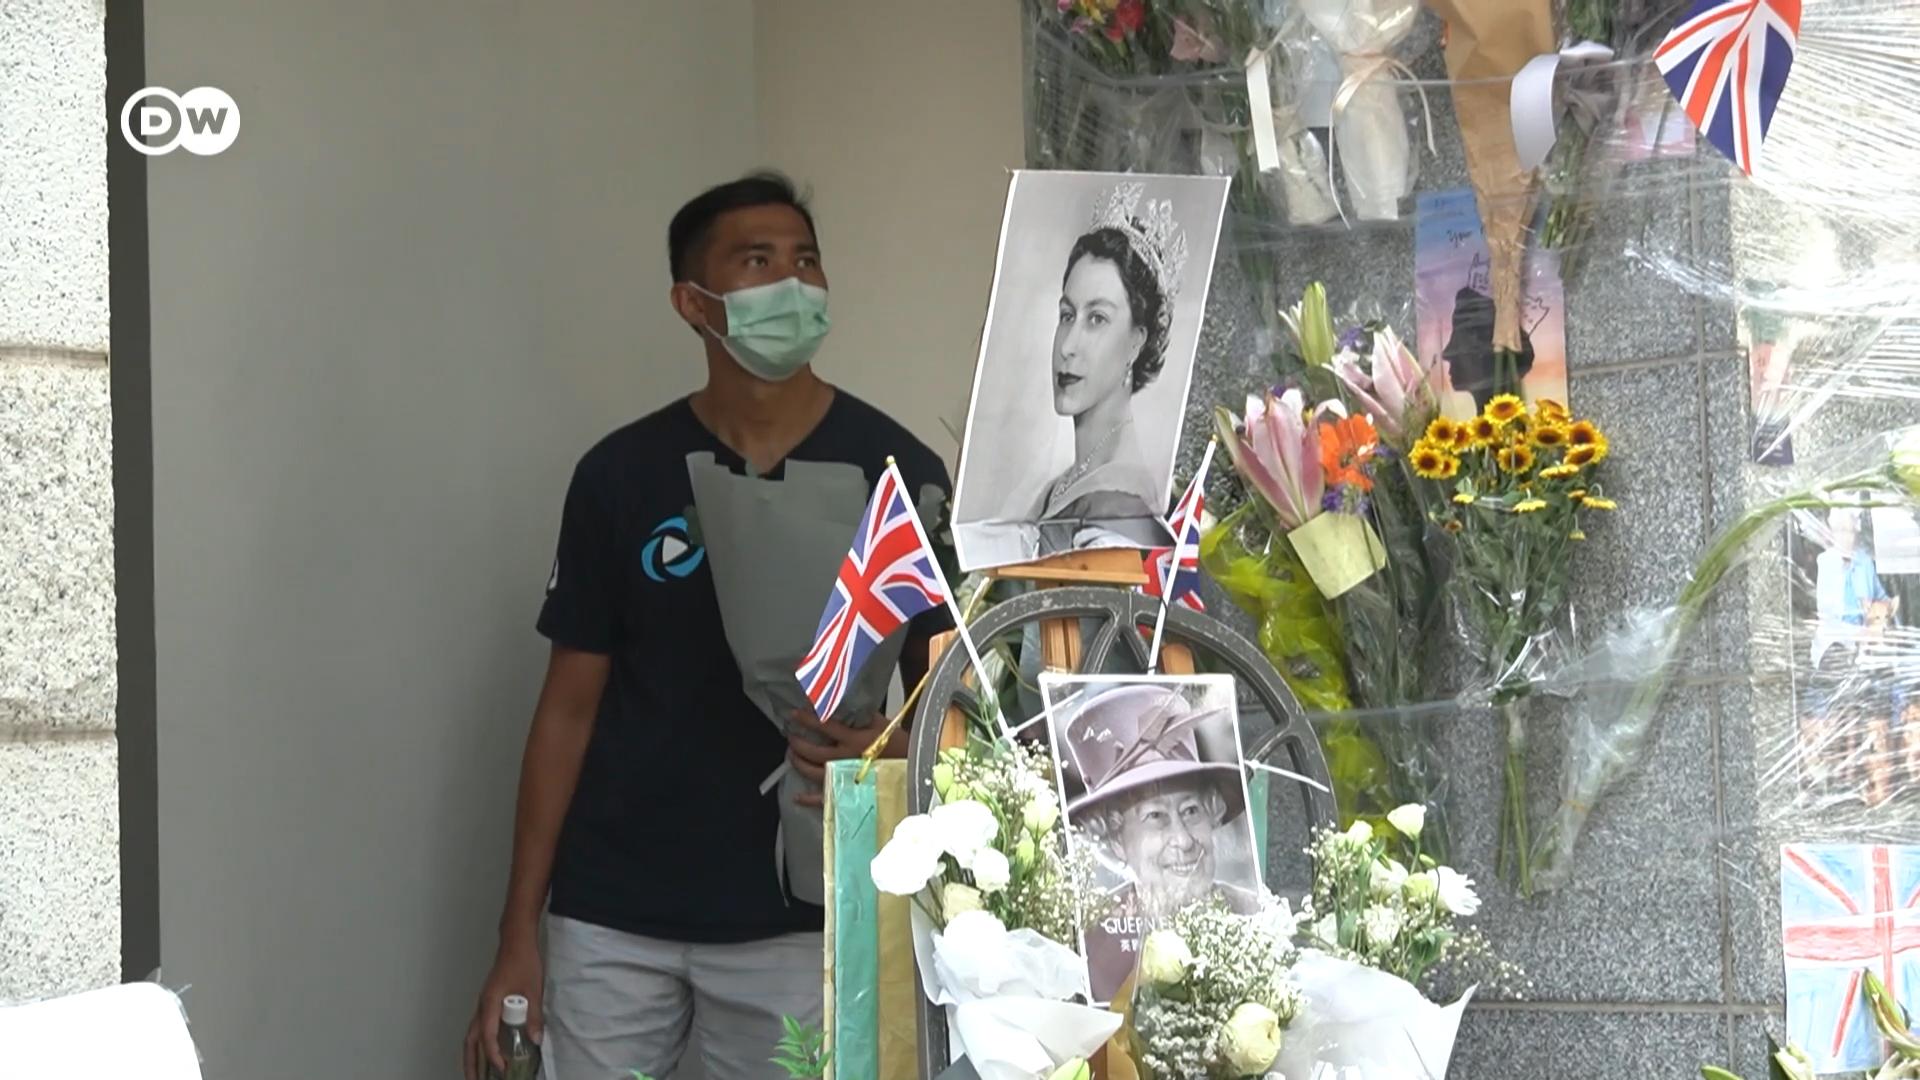 香港民間對英女王的悼念潮引起建制陣營反彈，要求加快「去殖化」。而不少港人形容「戀殖」背後是對「黃金時代」的懷念，以及投射對現今處境的哀思。這種複雜的情結，我們由香港唯一英殖博物館館長Bryan Ong的故事說起。